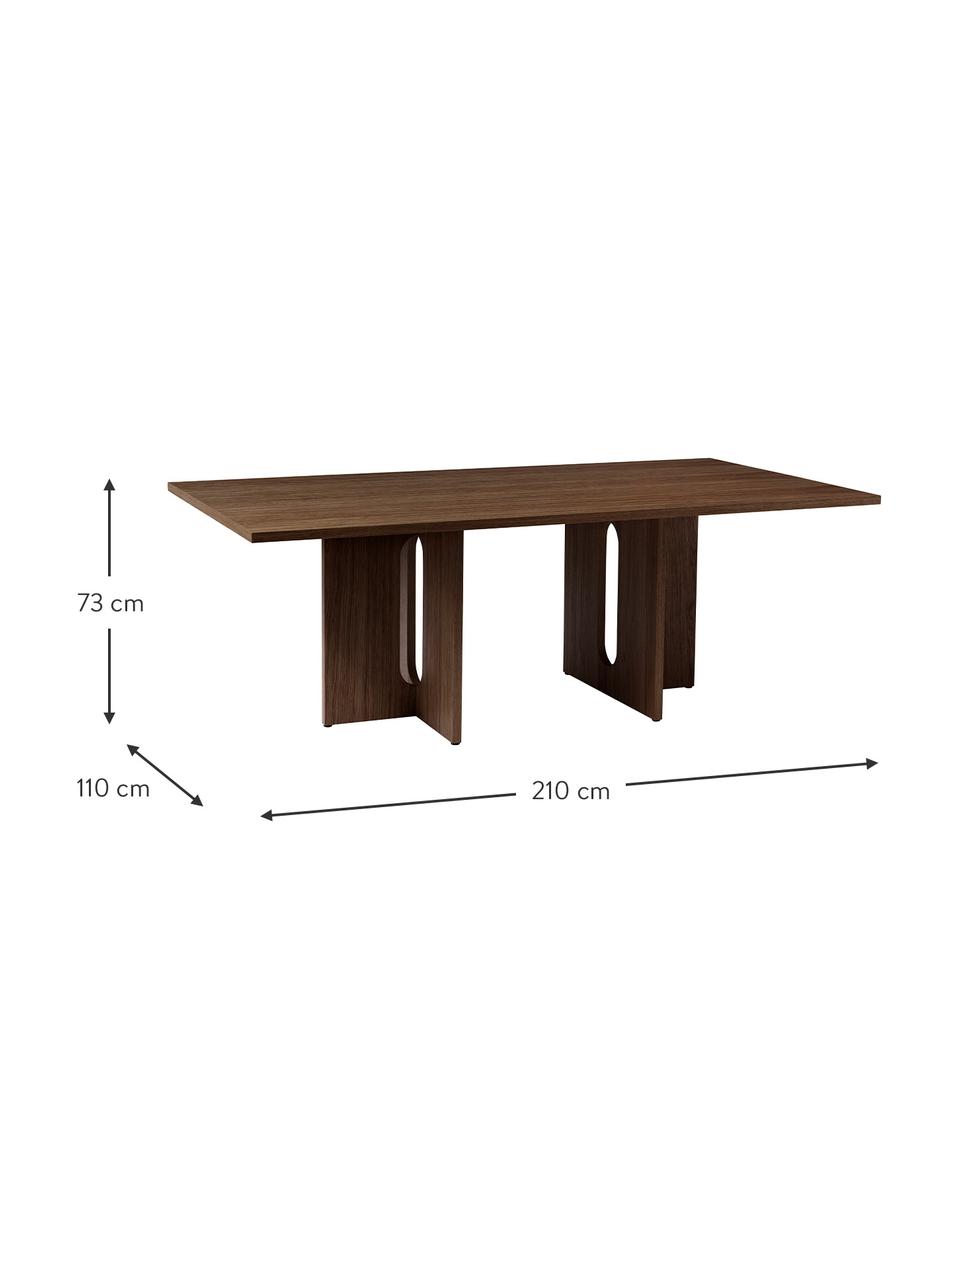 Jídelní stůl s tmavou dubovou dýhou Androgyne, MDF deska (dřevovláknitá deska střední hustoty) s dubovou dýhou, Dřevo, mořené na tmavo, Š 210 cm, H 110 cm